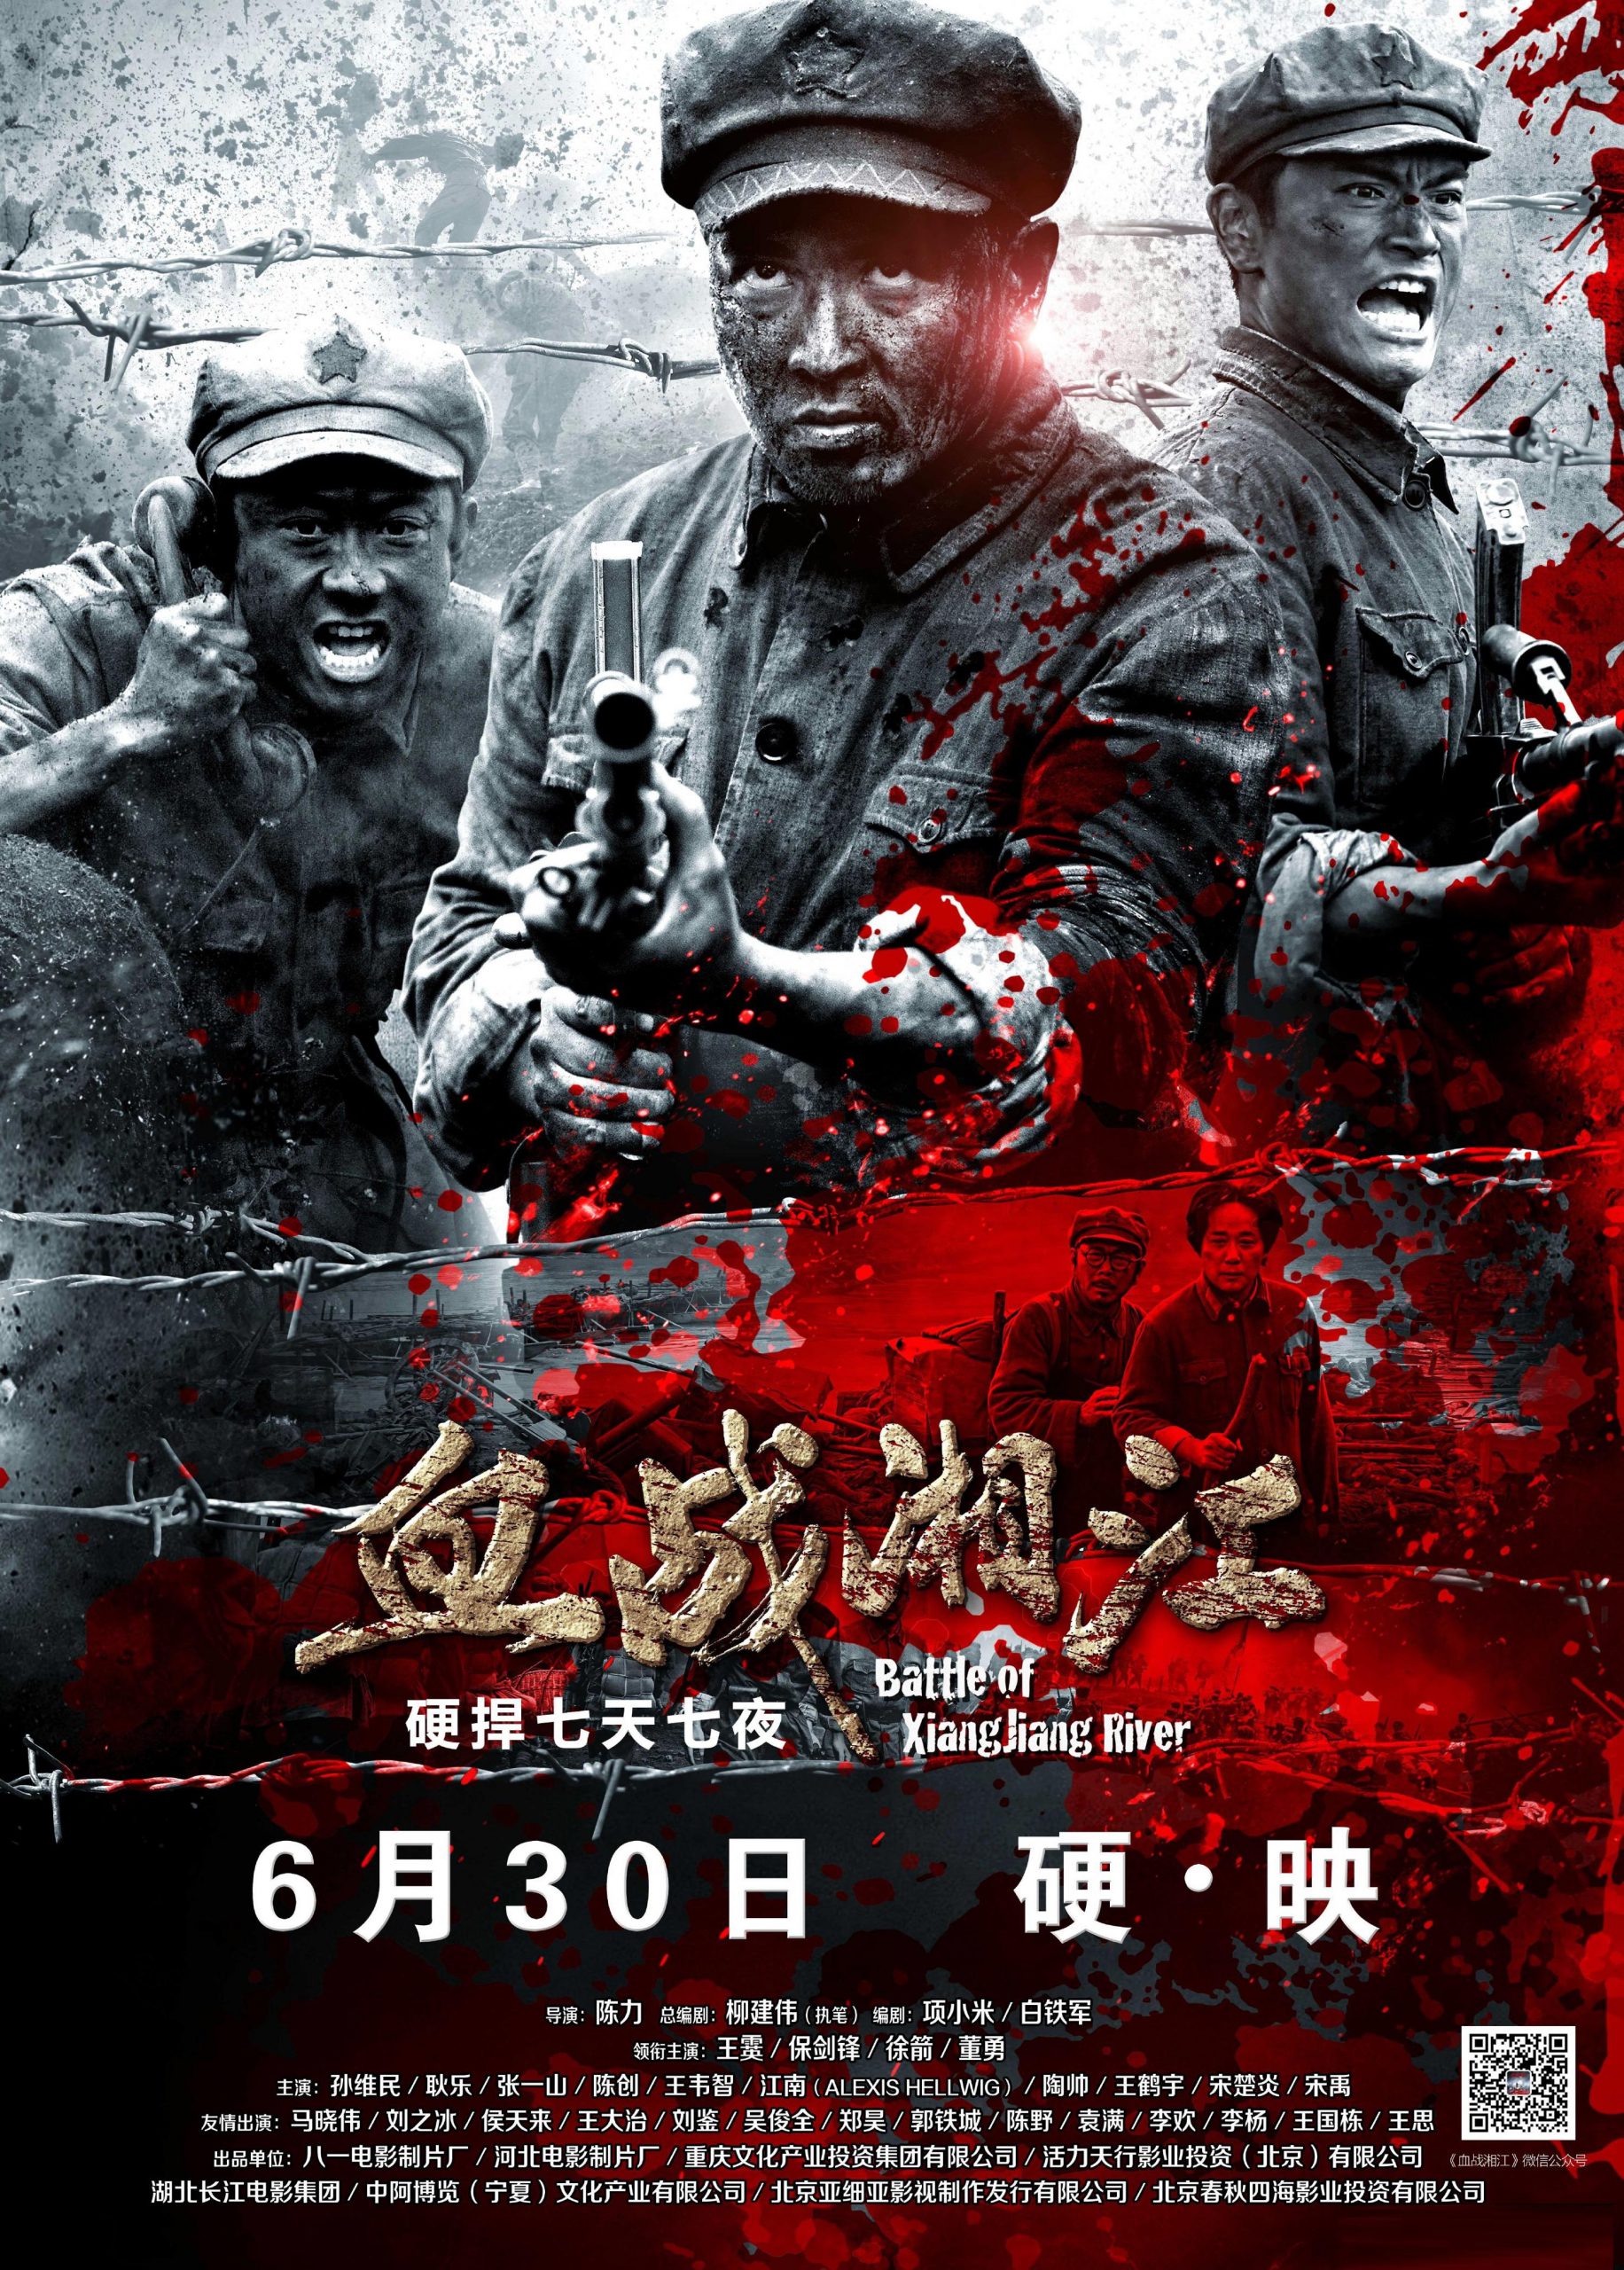 ดูหนังออนไลน์ฟรี Battle of Xiangjiang River สงครามเดือดล้างเลือดแม่น้ำนรก